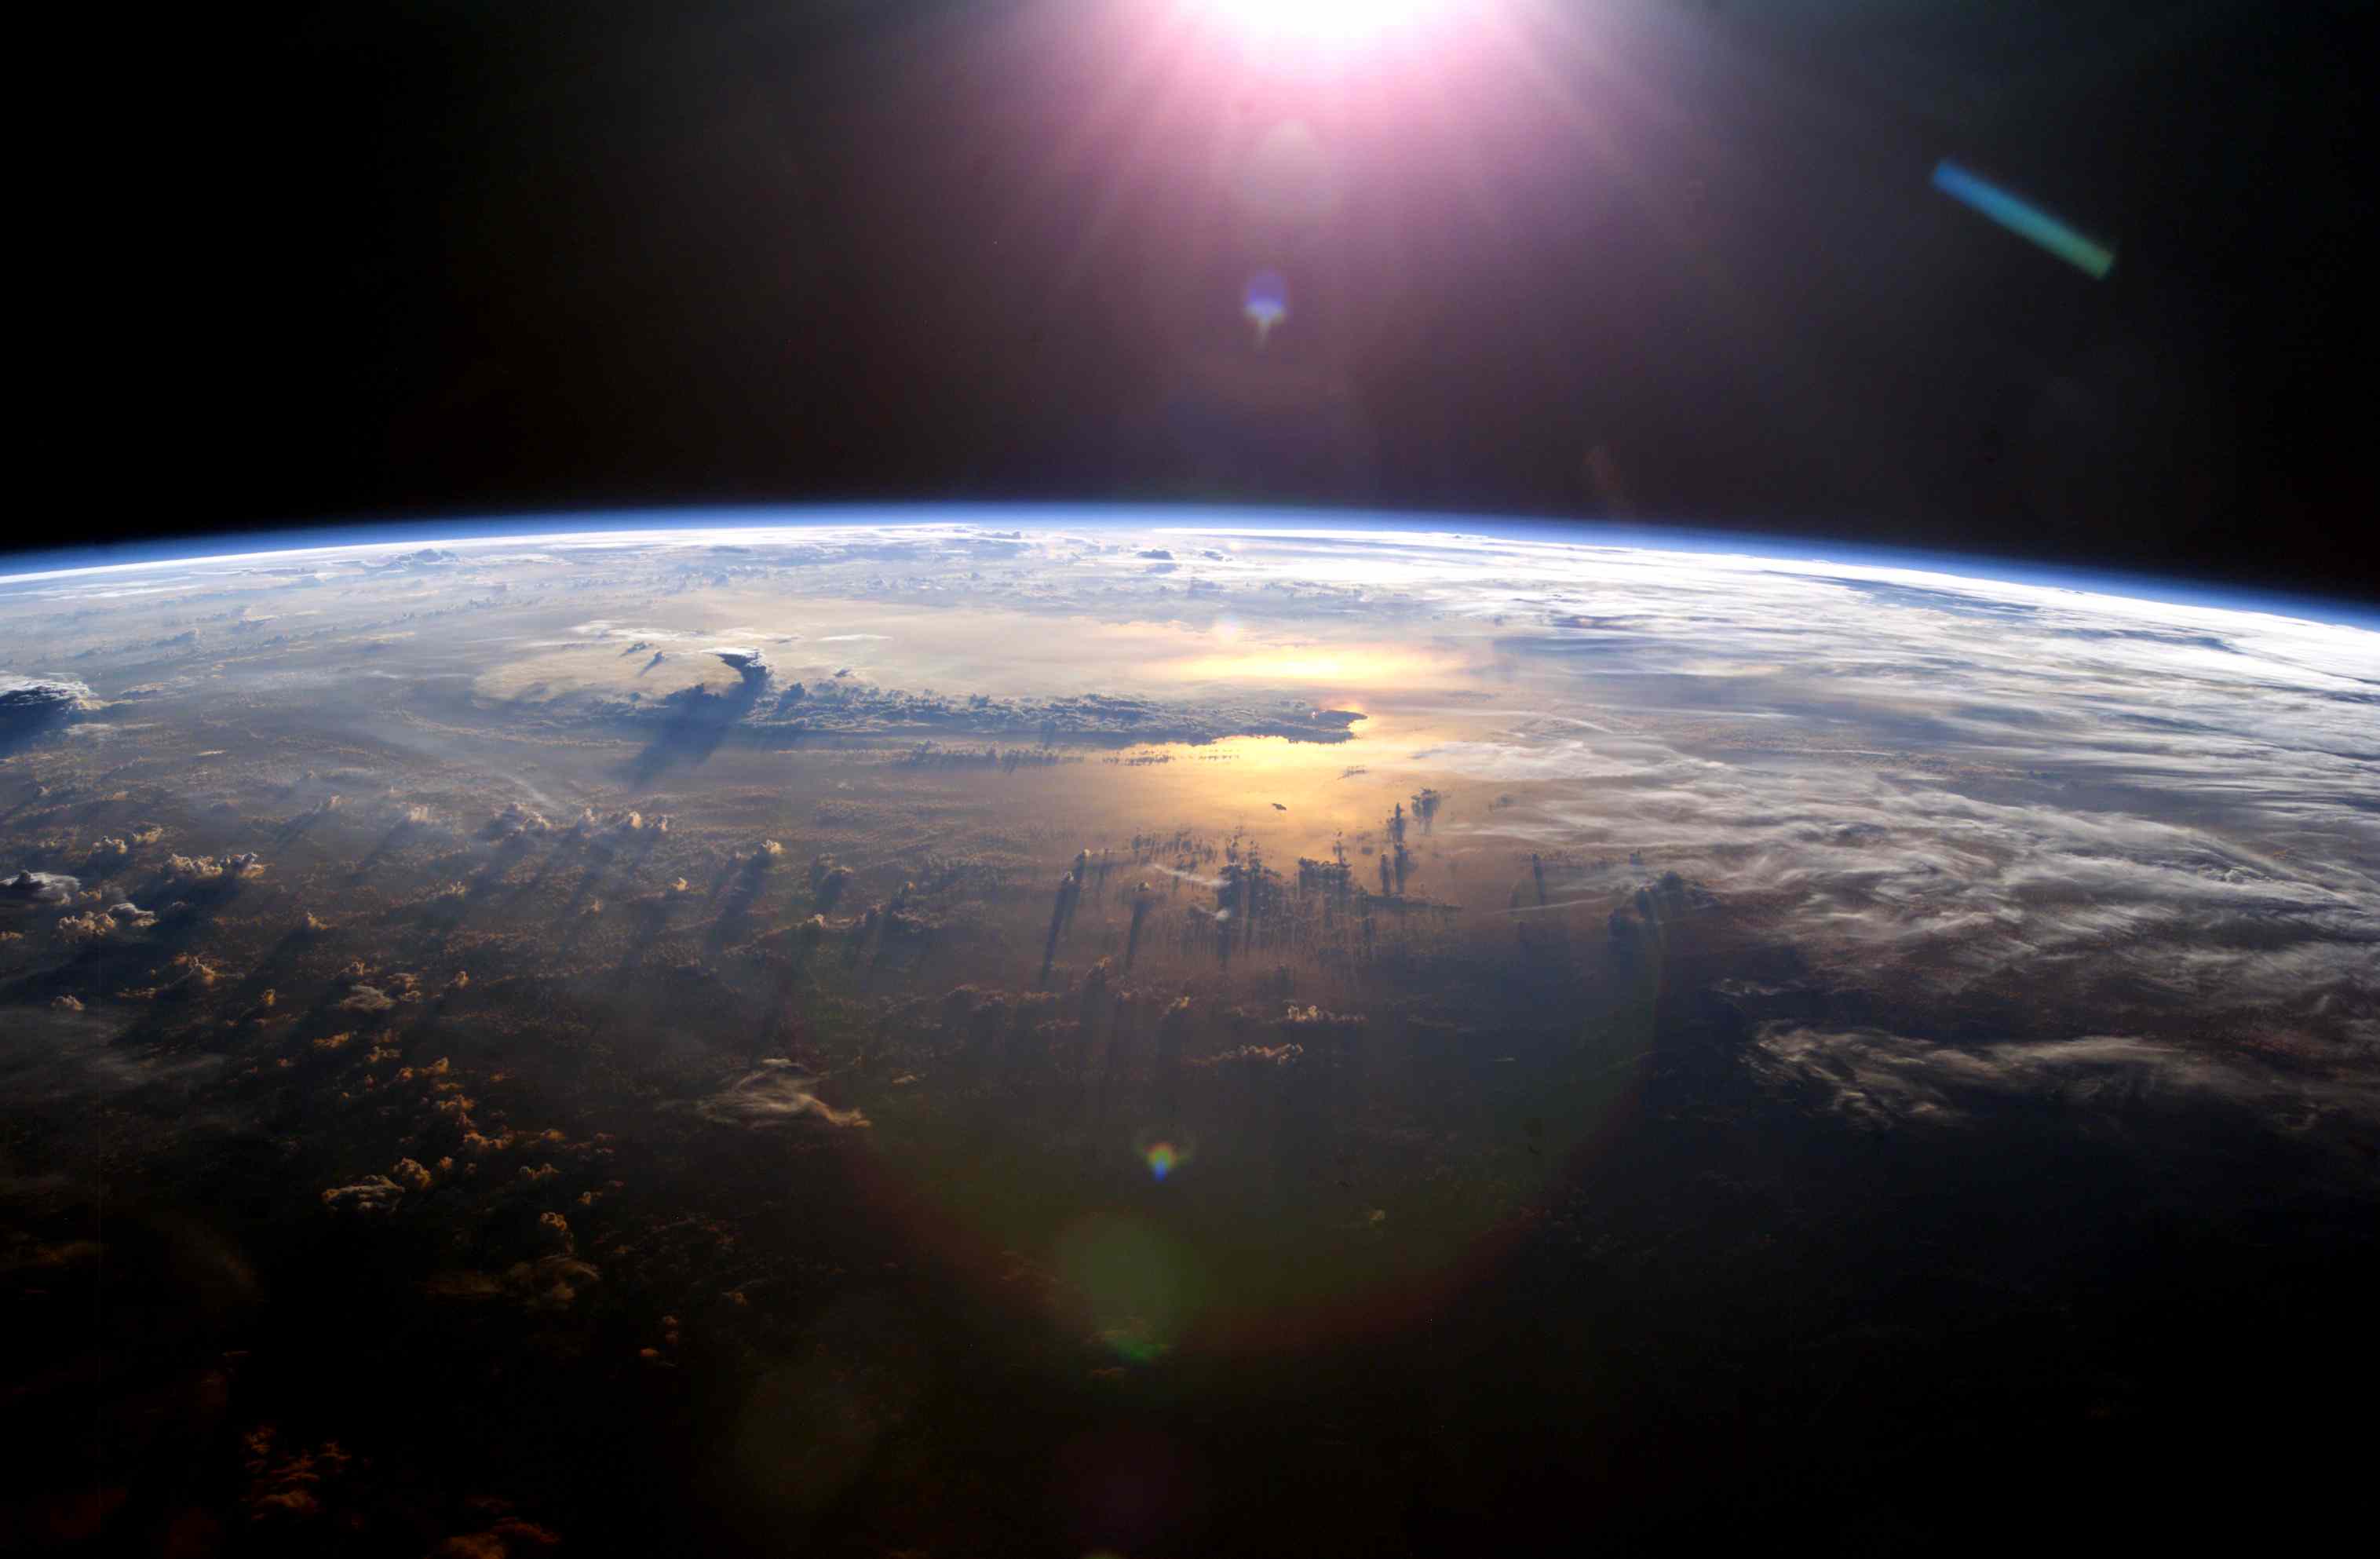 这是国际空间站拍摄的地球大气层照片